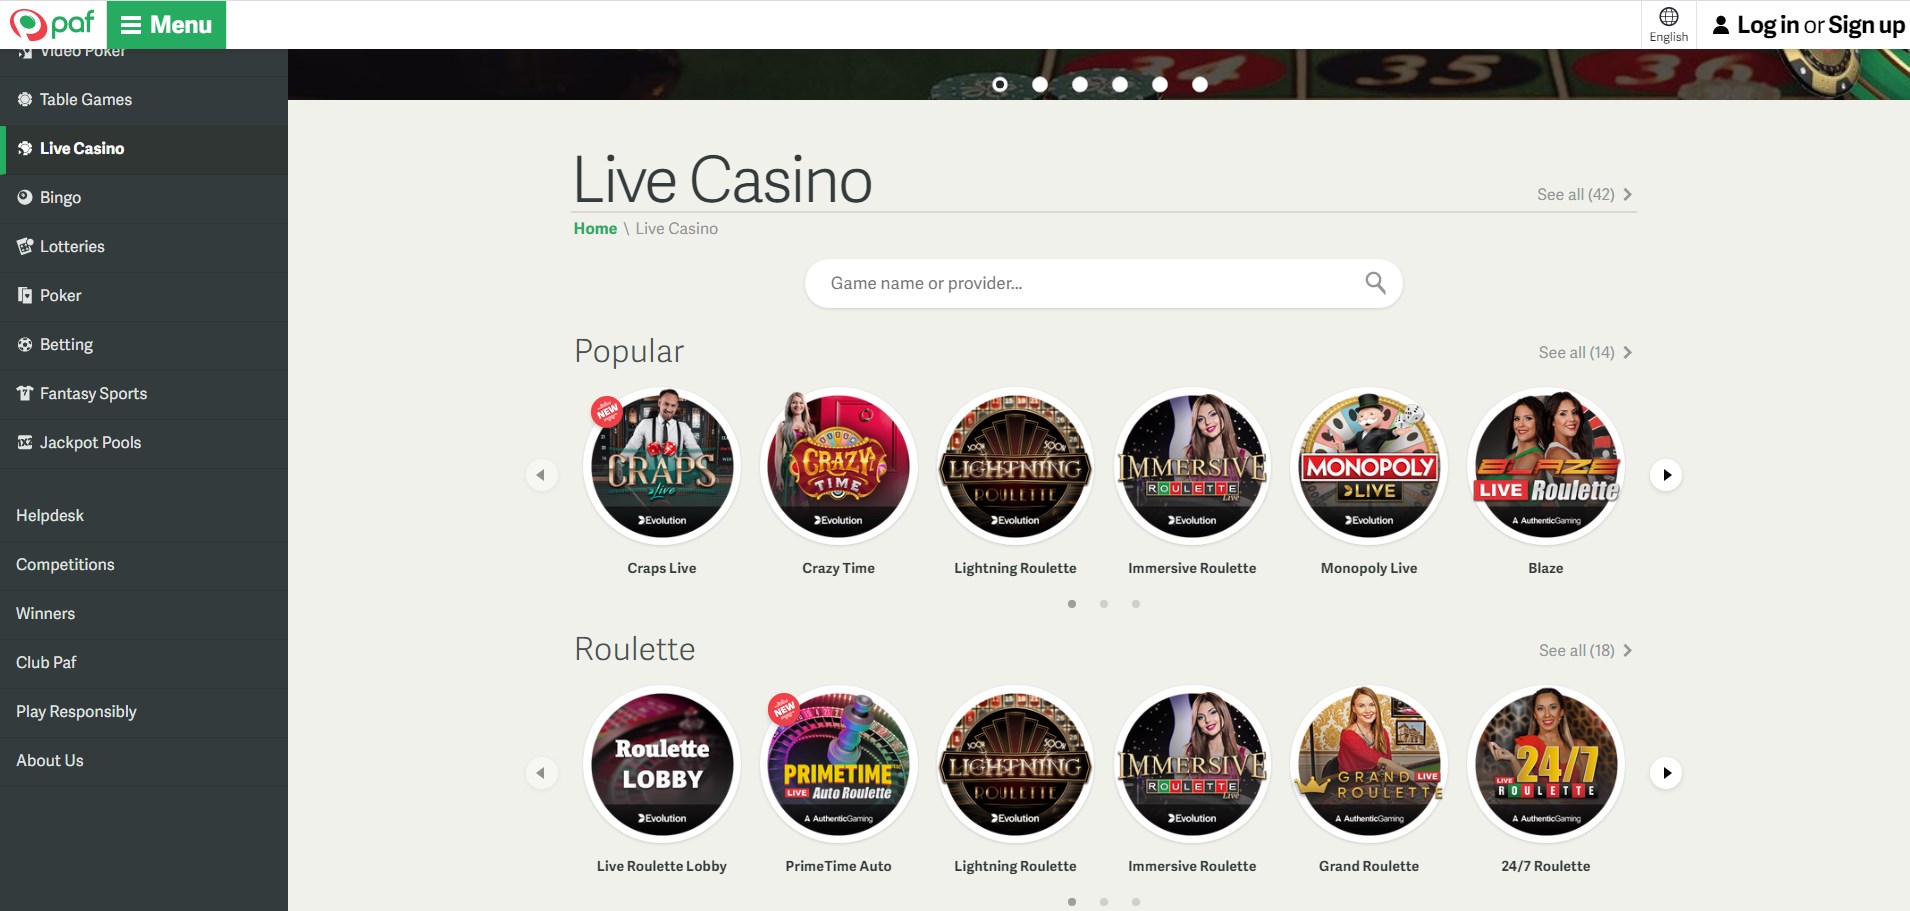 Paf Casino Live Dealer Games